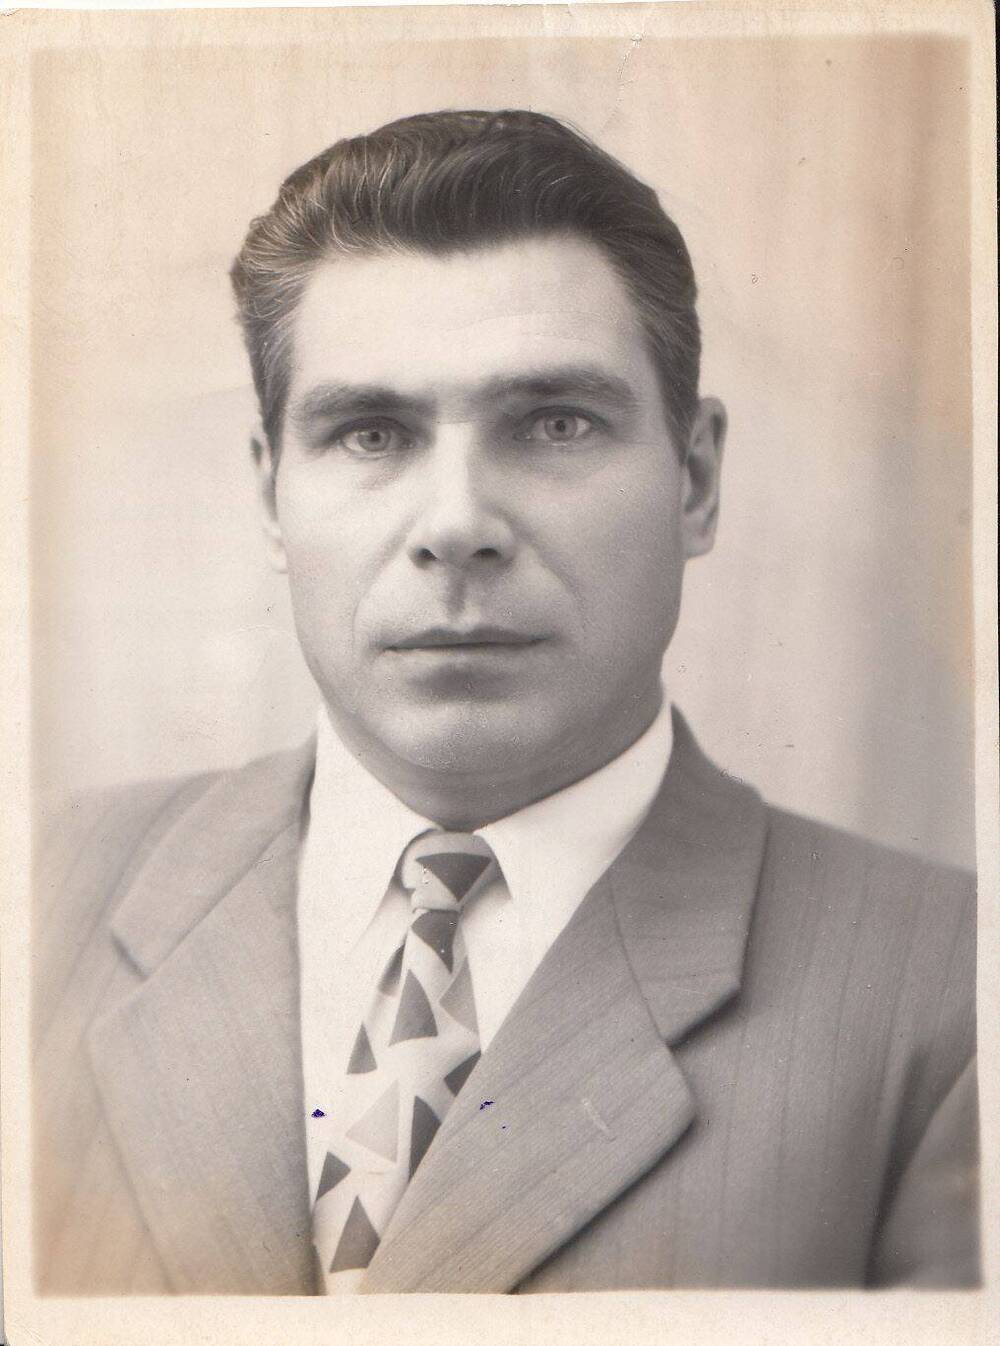 Фотография: Кабенин Николай Илларионович, бывший курсант Подольского артиллерийского училища